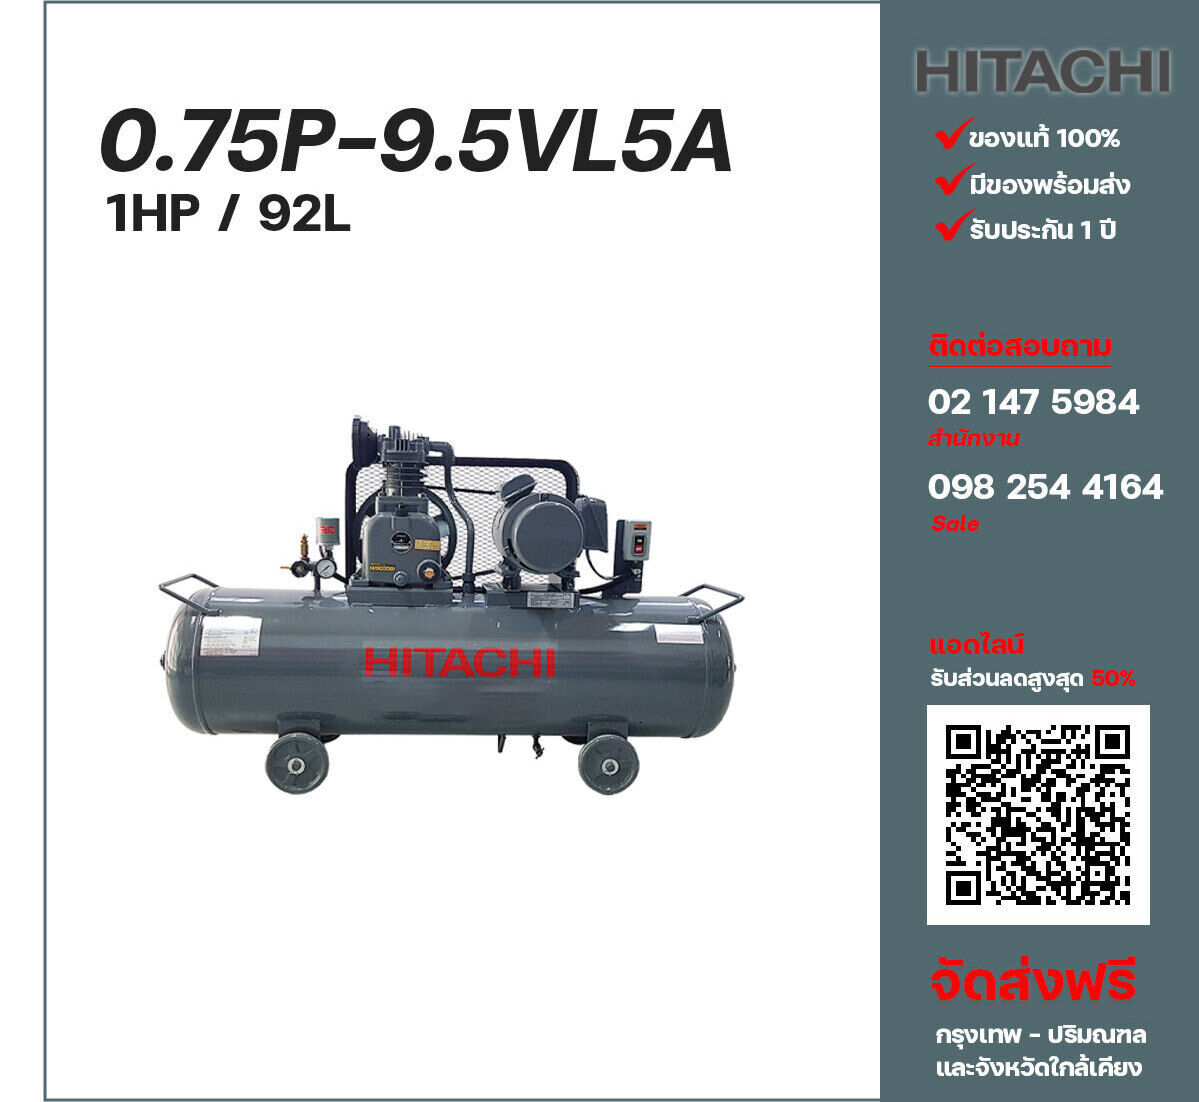 ปั๊มลมฮิตาชิ HITACHI รุ่นใช้น้ำมัน 0.75P-9.5VL5A380V ปั๊มลมลูกสูบ ขนาด 1 สูบ 1 แรงม้า 92 ลิตร Hitachi พร้อมมอเตอร์ Hitachi ไฟ 380V ส่งฟรี กรุงเทพฯ-ปริมณฑล รับประกัน 1 ปี